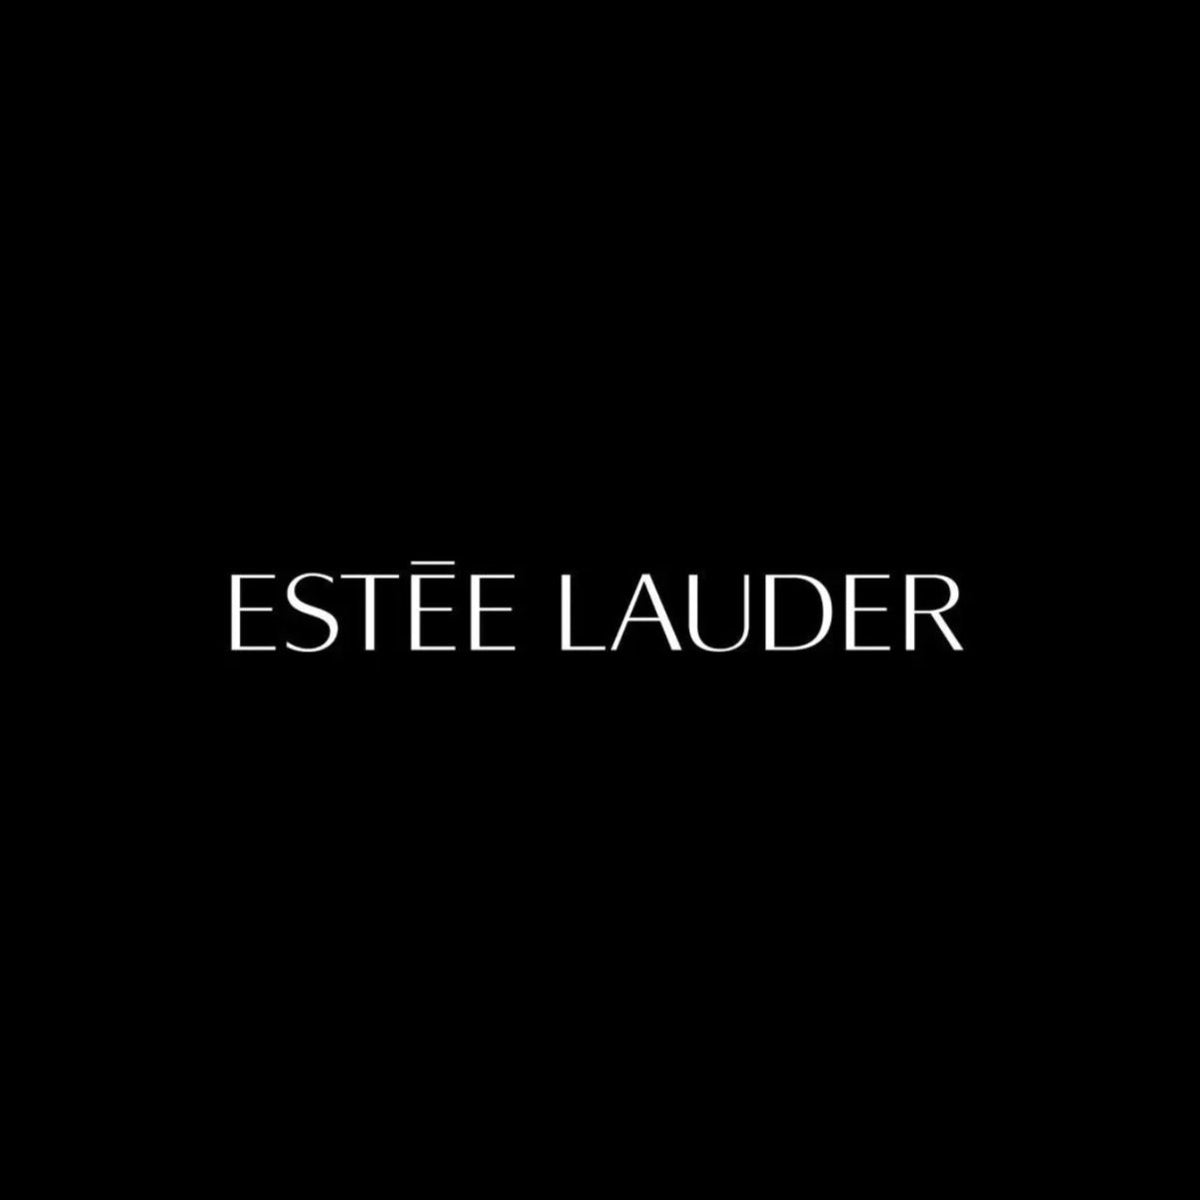 Estee Lauder אסתי לאודר